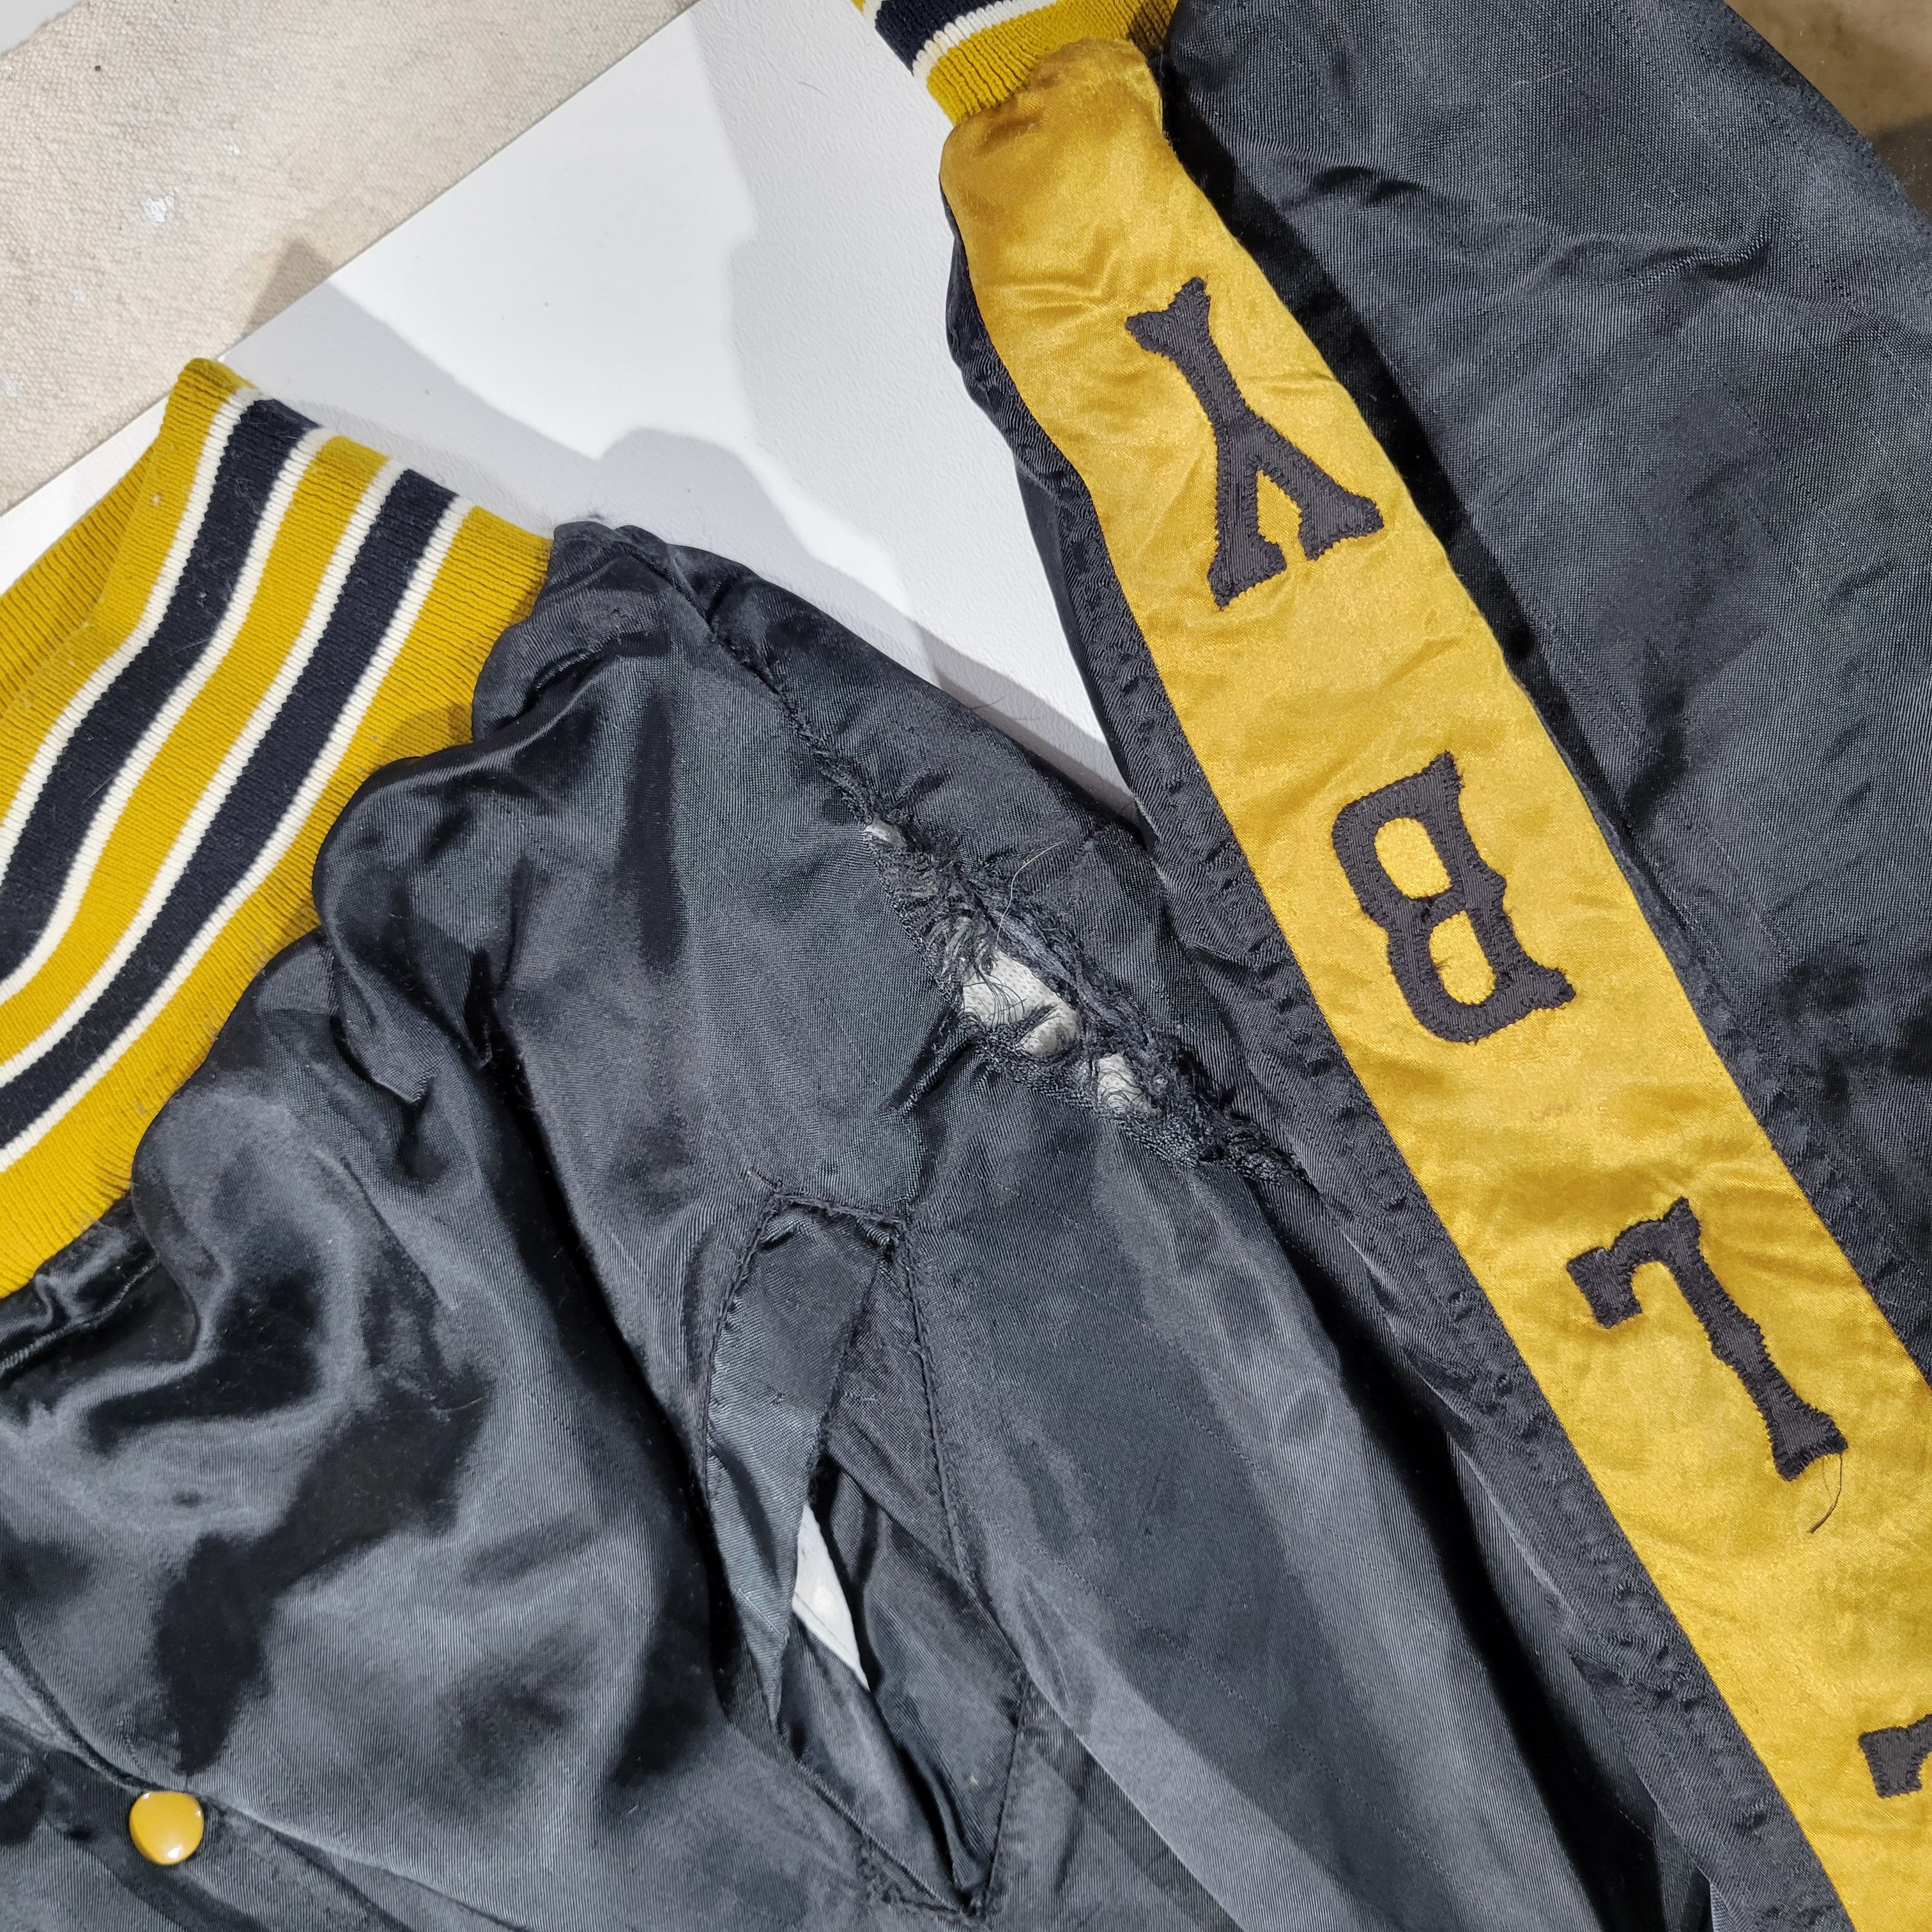 Vintage 50's 60's Satin School Jacket Size US L / EU 52-54 / 3 - 6 Thumbnail